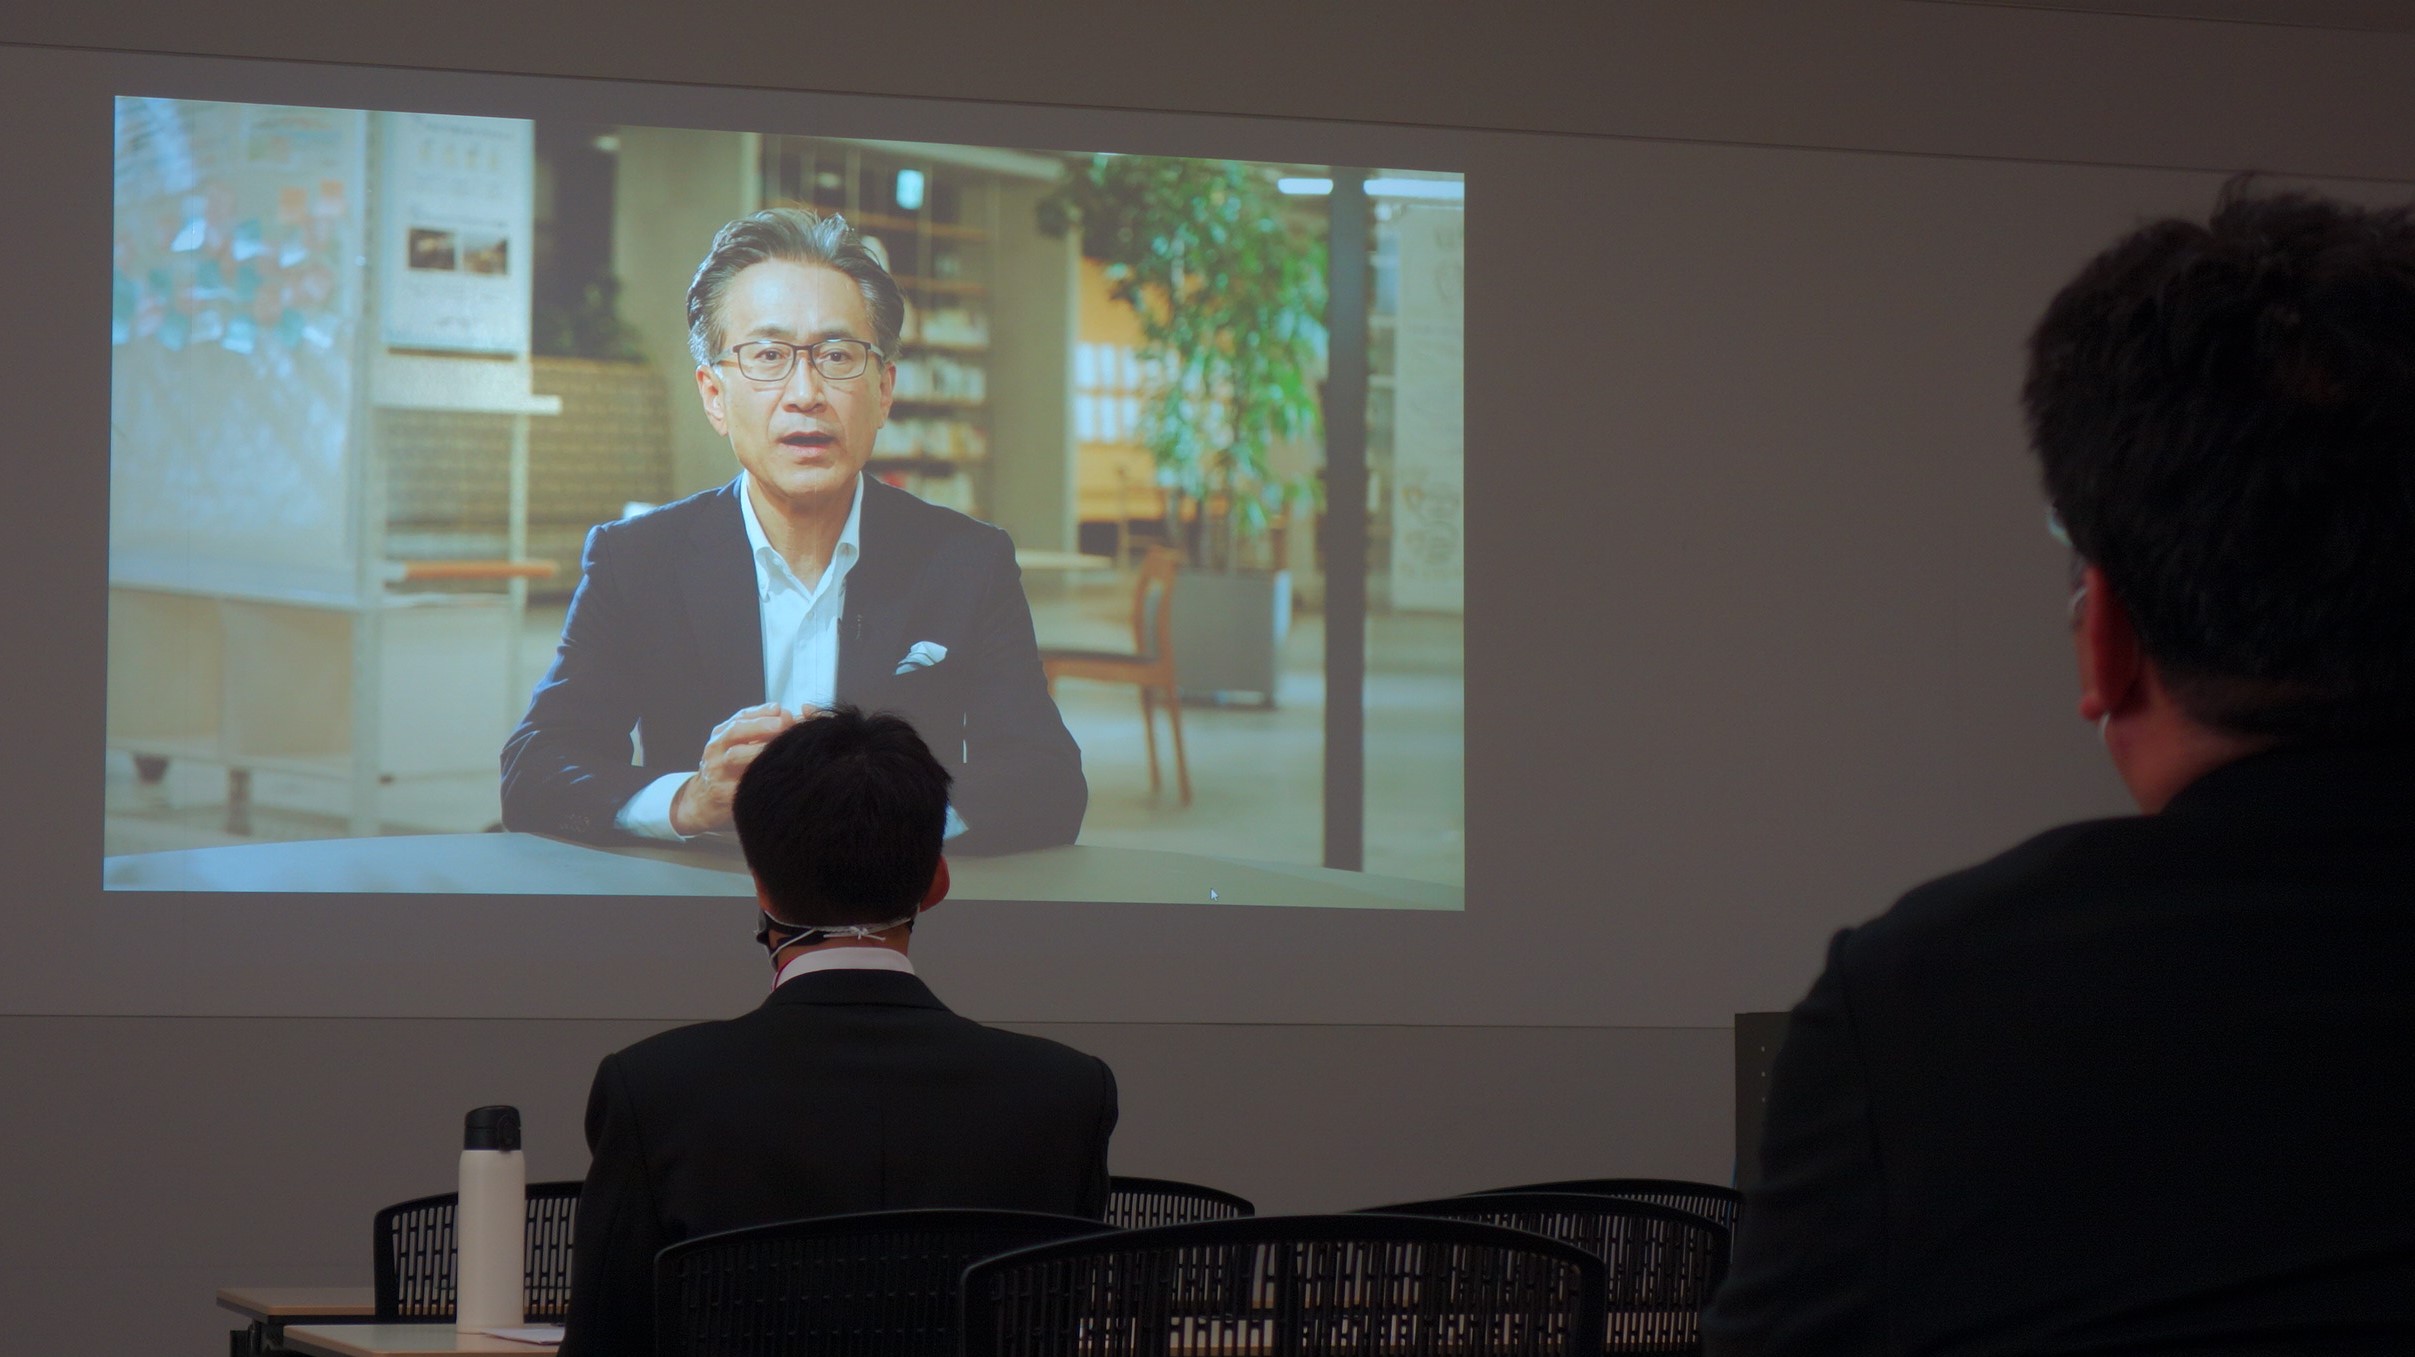 会長 兼 社長CEO 吉田からのウェルカムメッセージを新入社員の方が真剣に聞き入った様子の画像